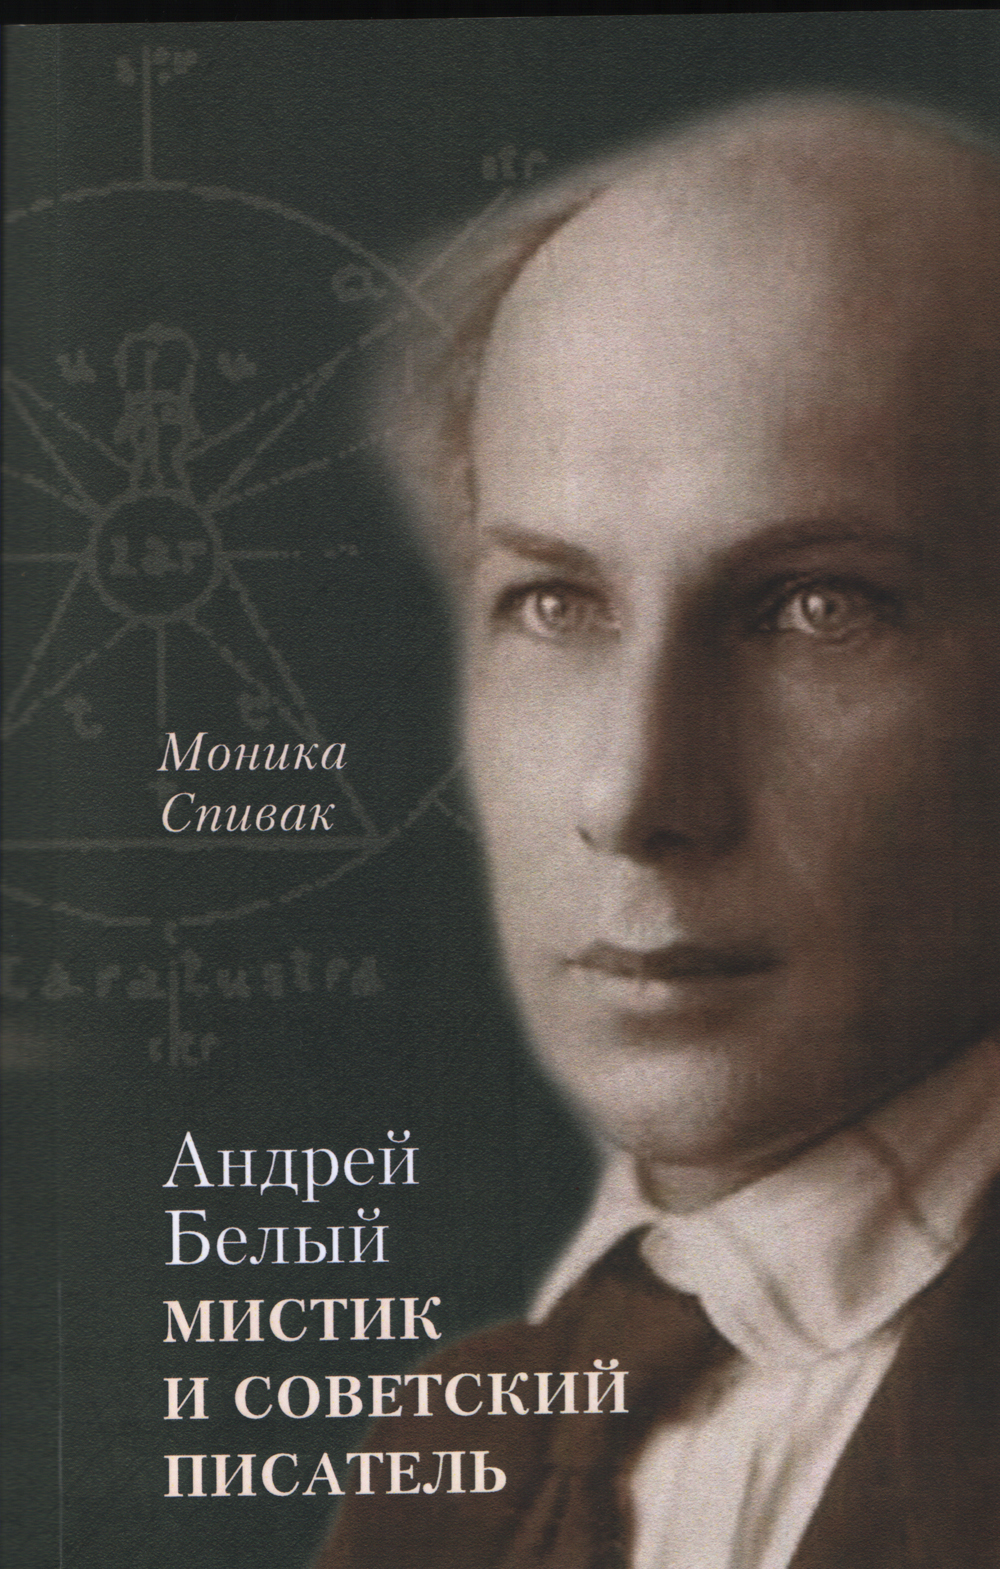 Андрей Белый - мистик и советский писатель. 2-е издание